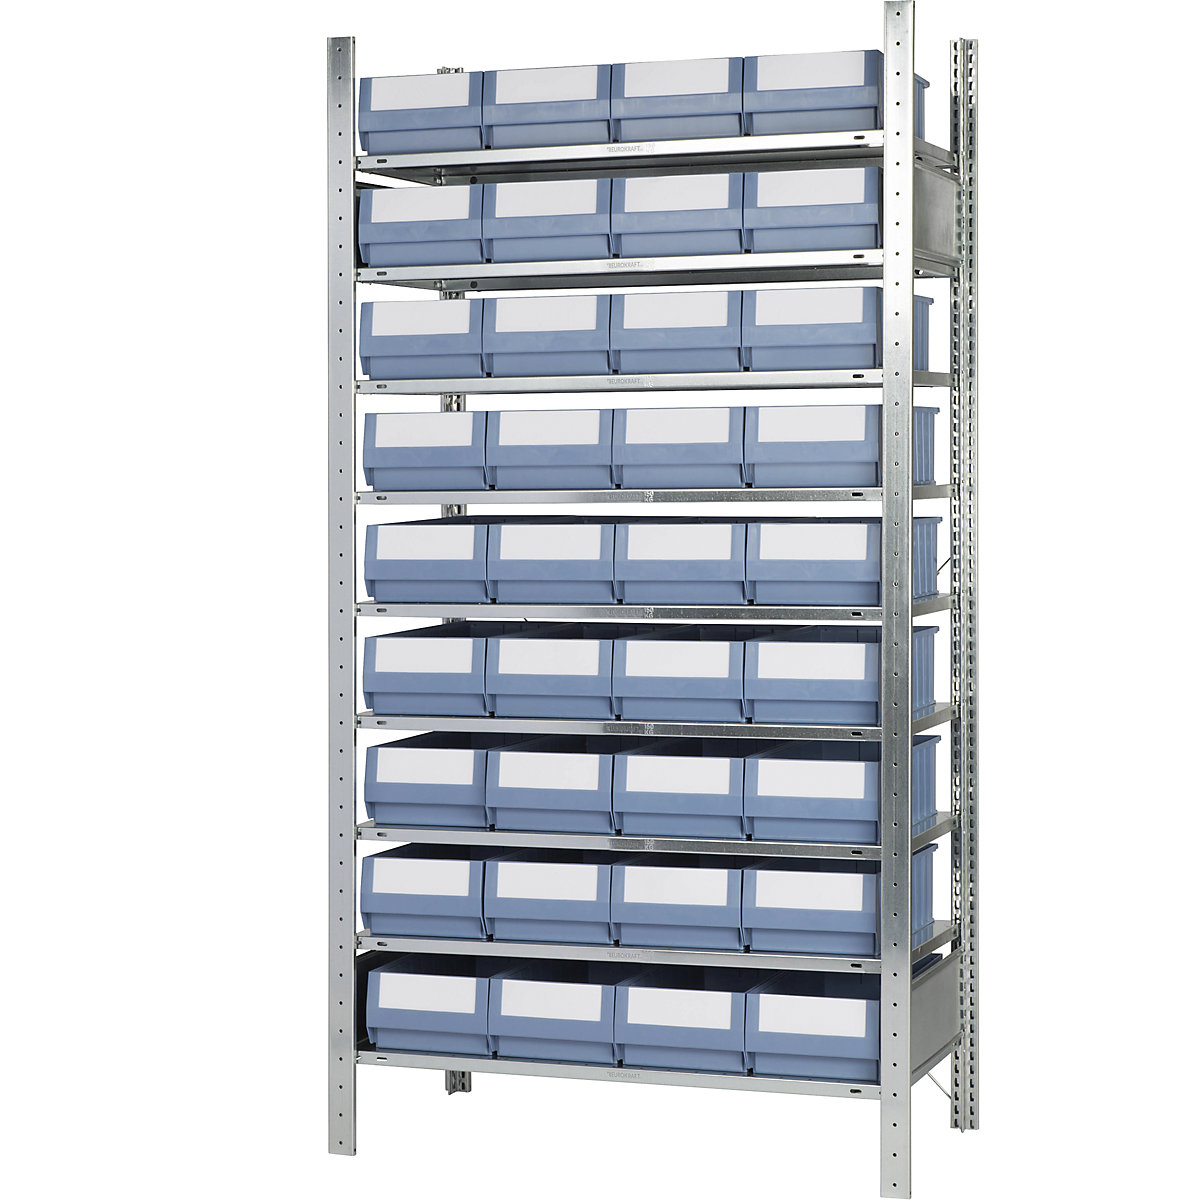 Estante de encaixar com caixas para estante – eurokraft pro, altura 2000 mm, 36 caixas, 9 prateleiras, profundidade 536 mm, estante base-10